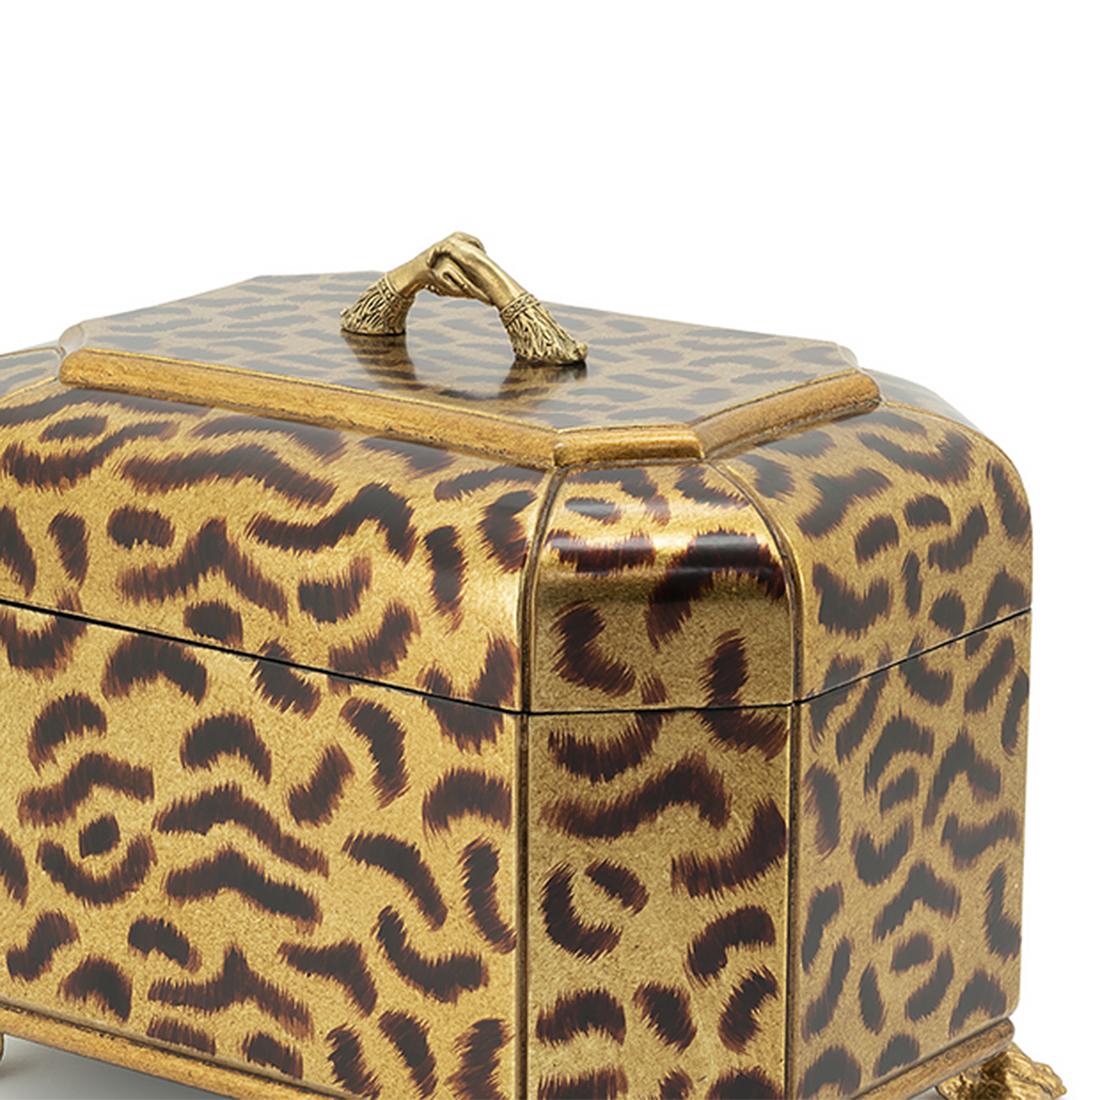 Contemporary Kenza Leo Box For Sale